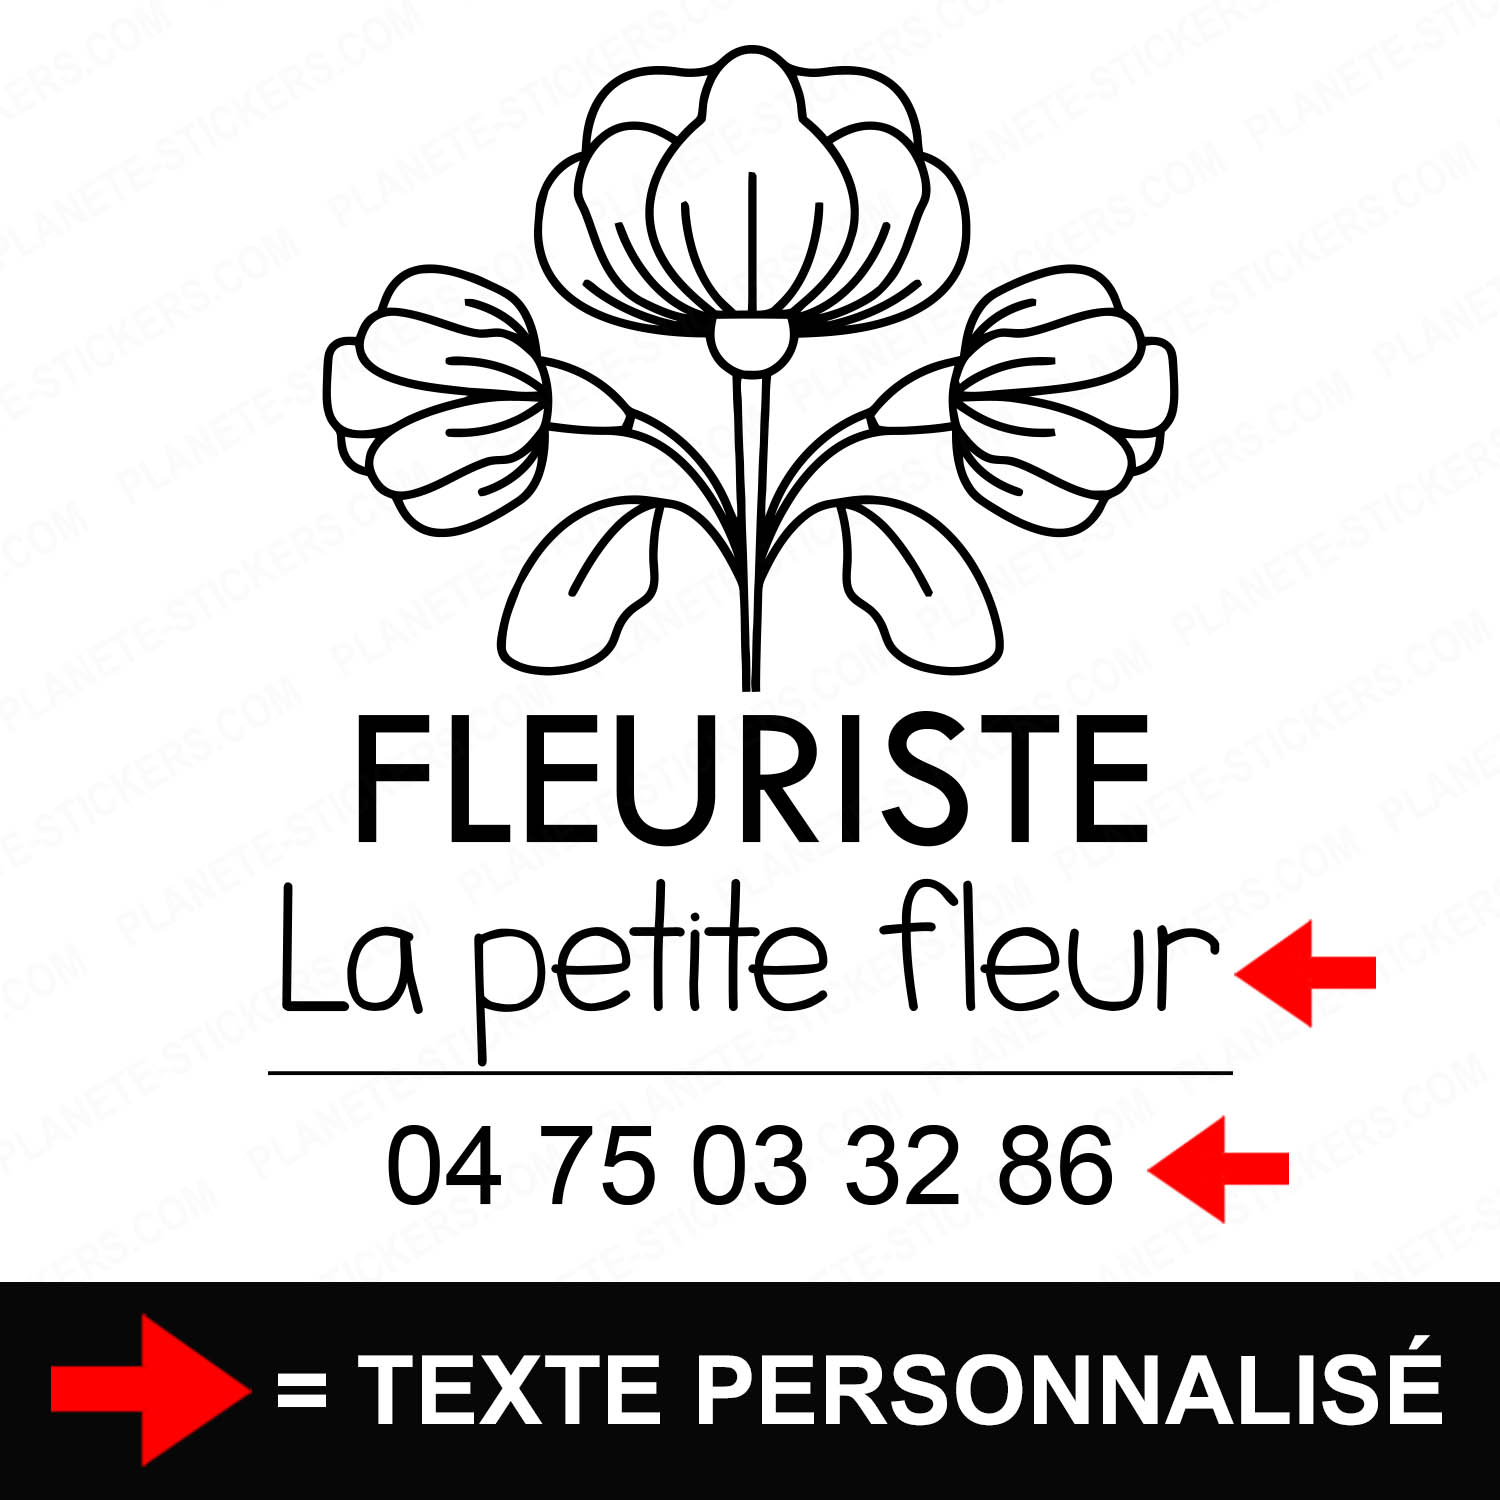 ref7fleuristevitrine-stickers-boutique-vitrine-sticker-personnalisé-autocollant-fleurs-bouquet-pro-professionnel-1